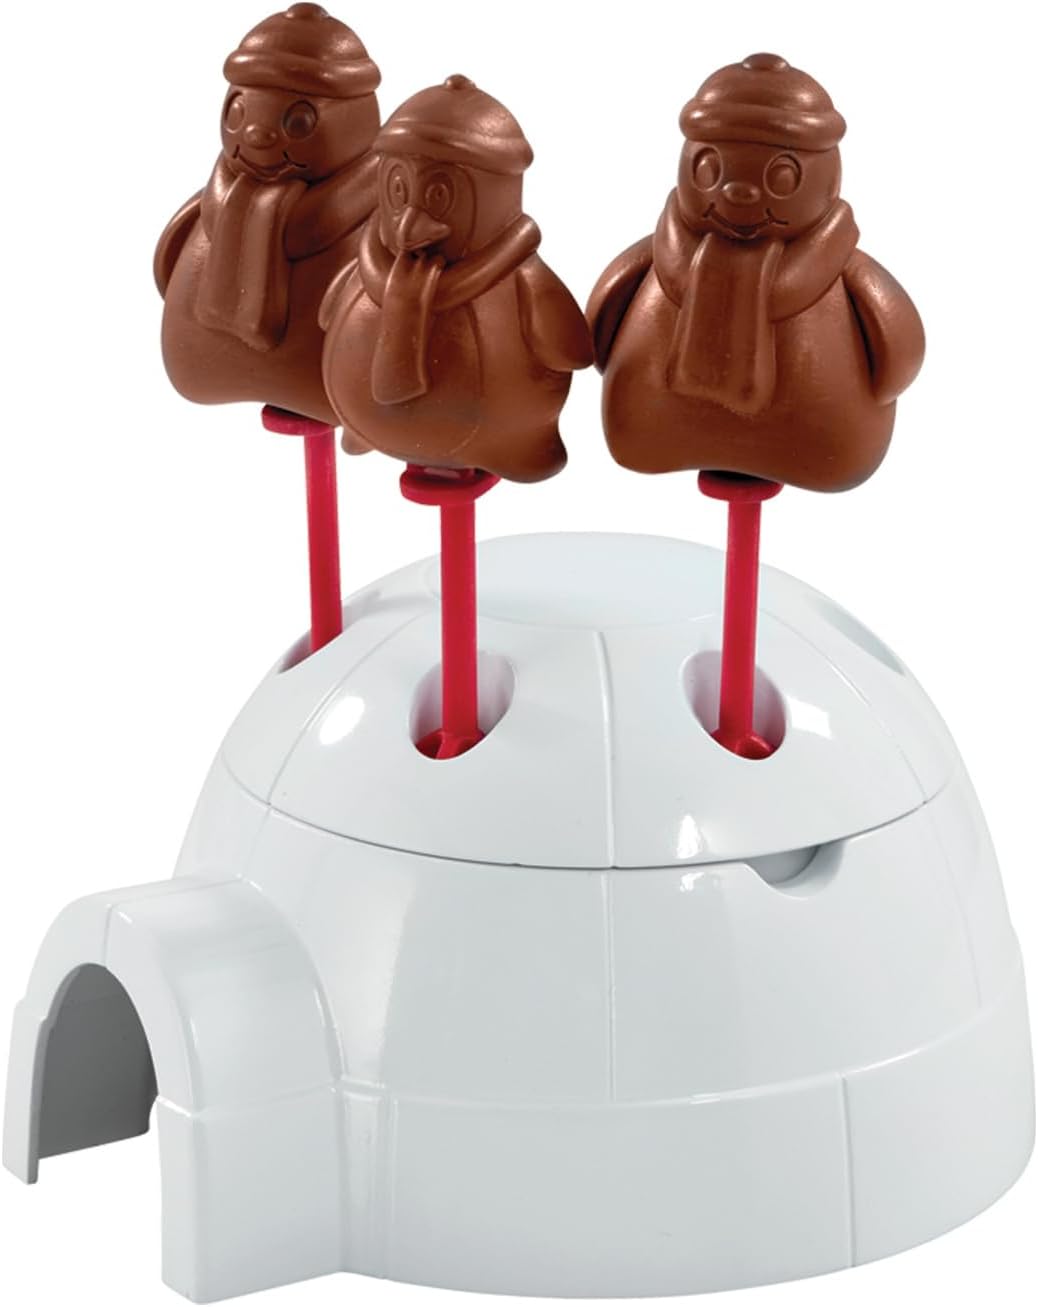 Mr Frosty Choc Eismaschine, Retro-Spielzeugmaschine aus Kunststoff in Schneemannform für Kinder bis M